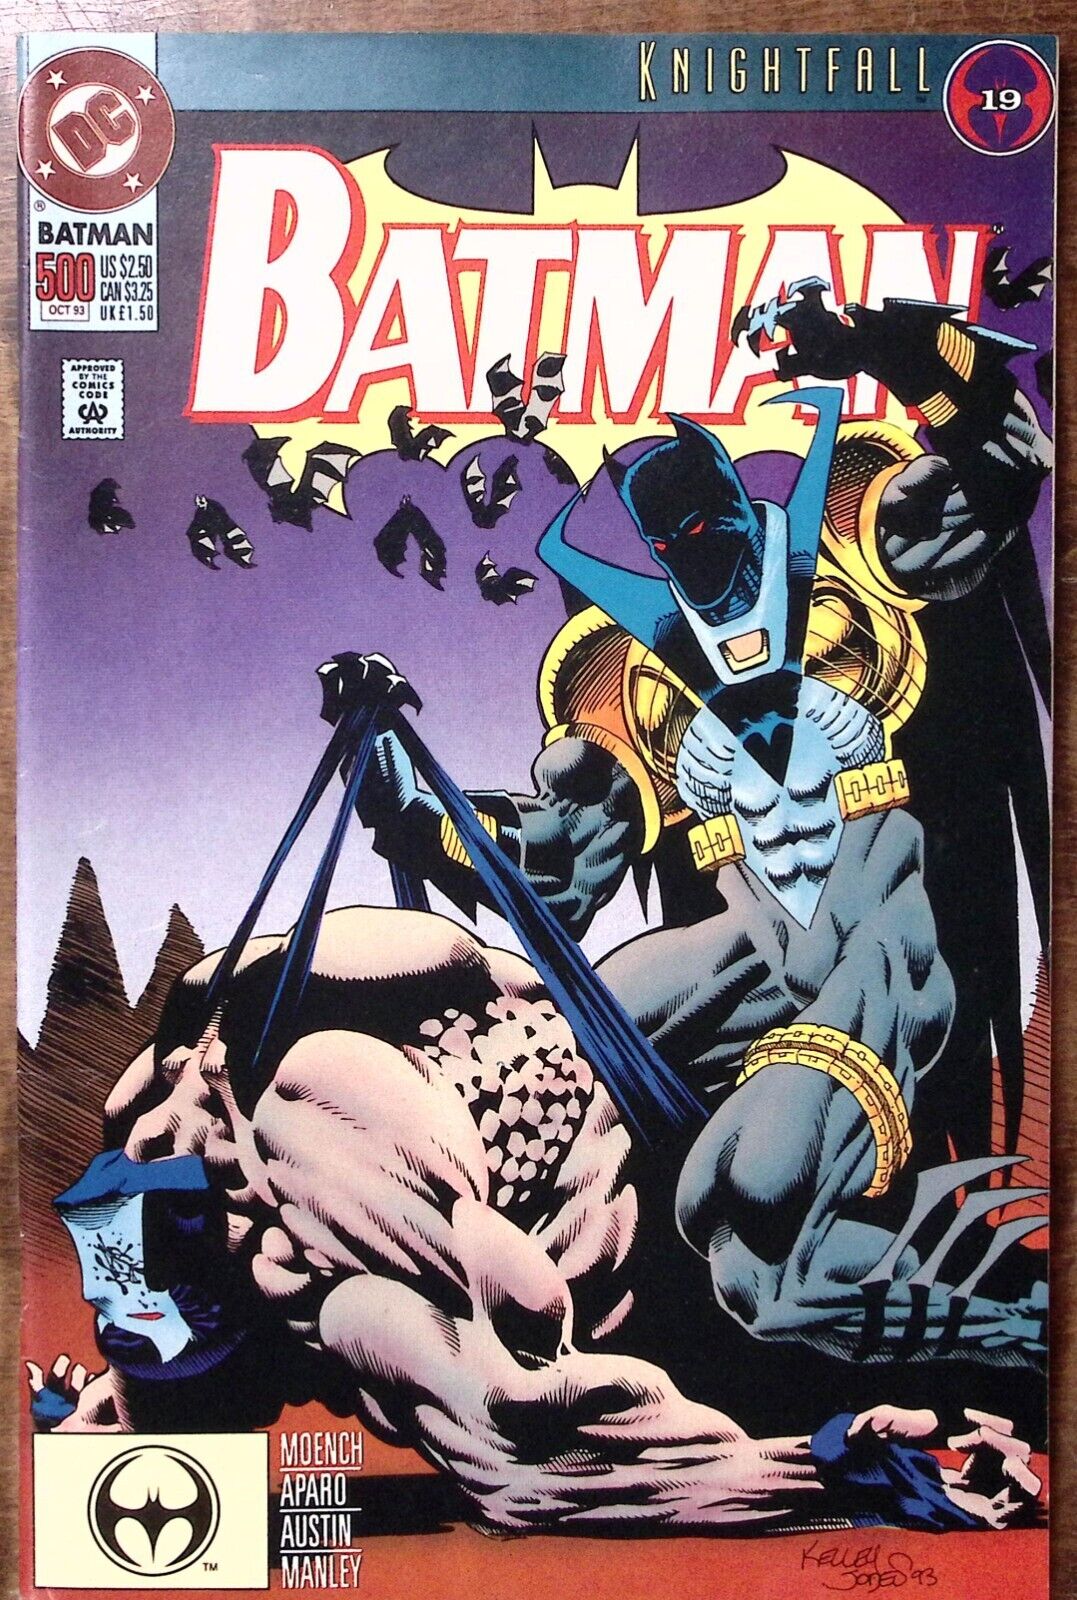 1993 BATMAN #500 OCT DARK ANGEL THE FALL KNIGHTFALL 19 EXC  DC COMICS Z4868